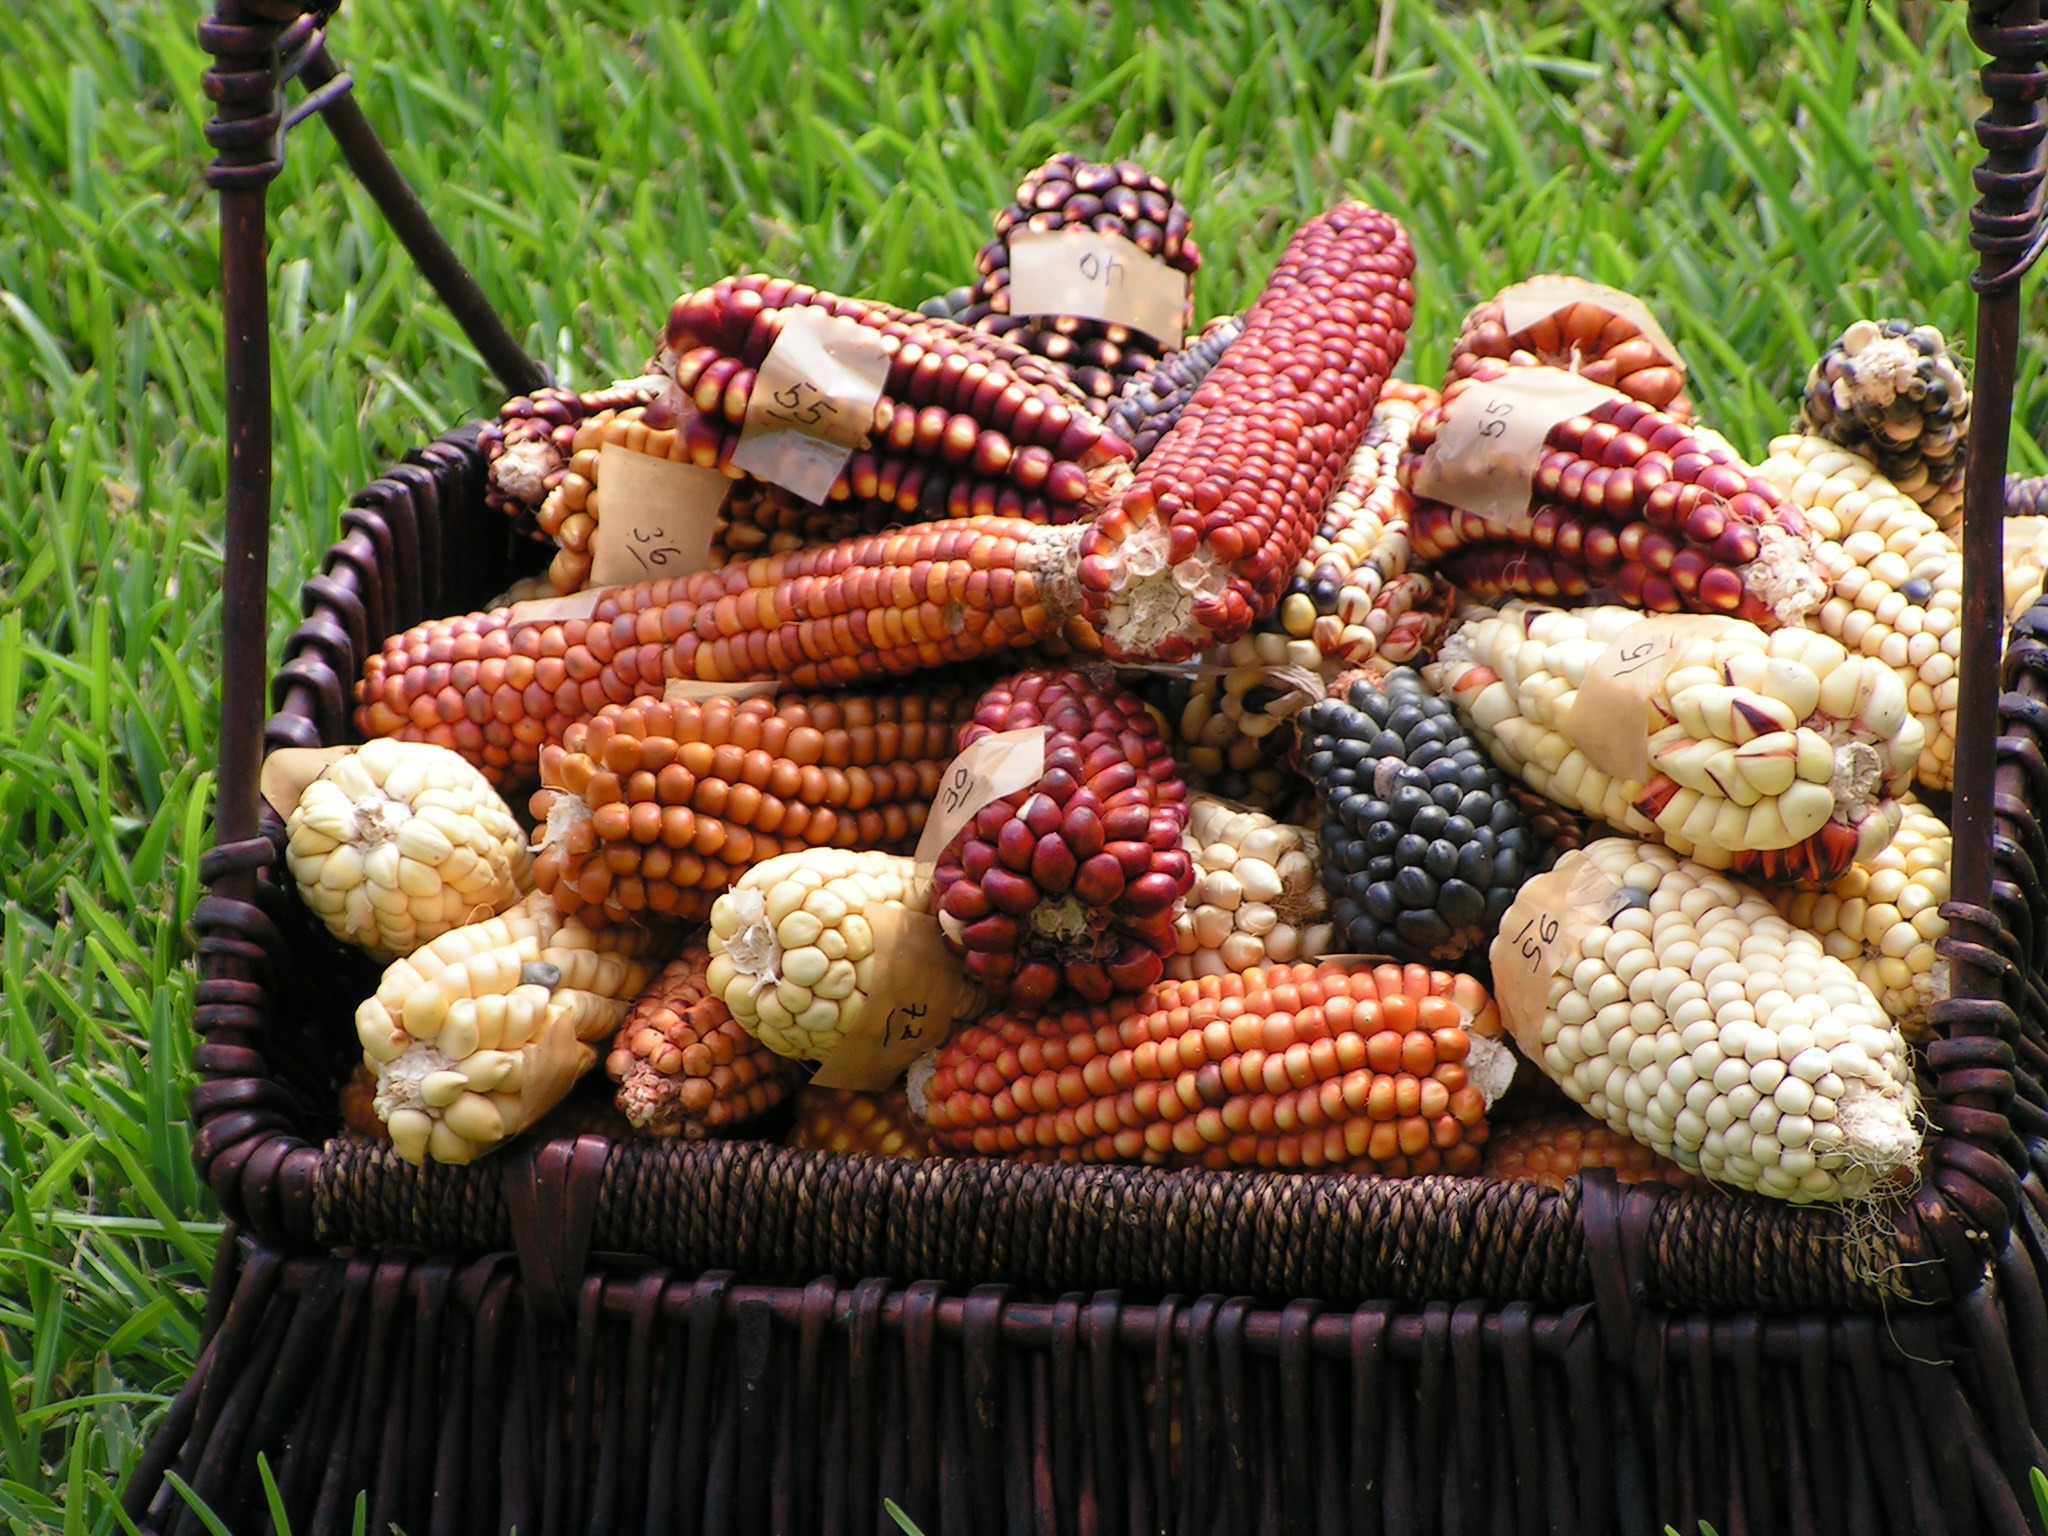 Peruvian corn cobs